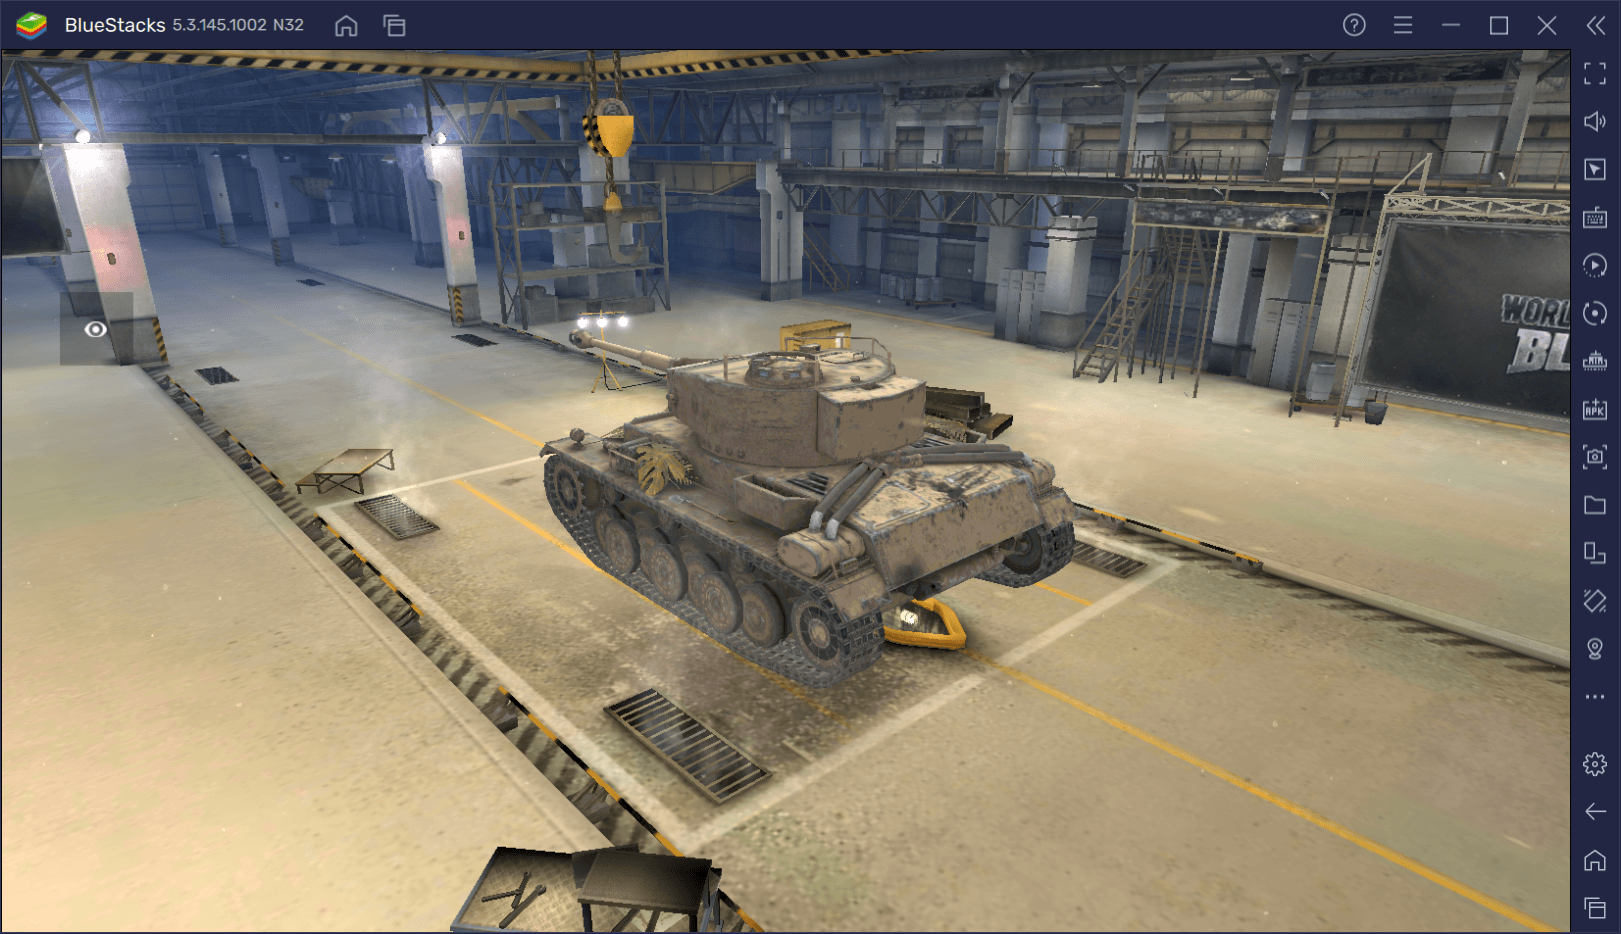 Гайд по коллекционному танку Barkhan в World of Tanks Blitz. Обзор характеристик, достоинств и тактик игры